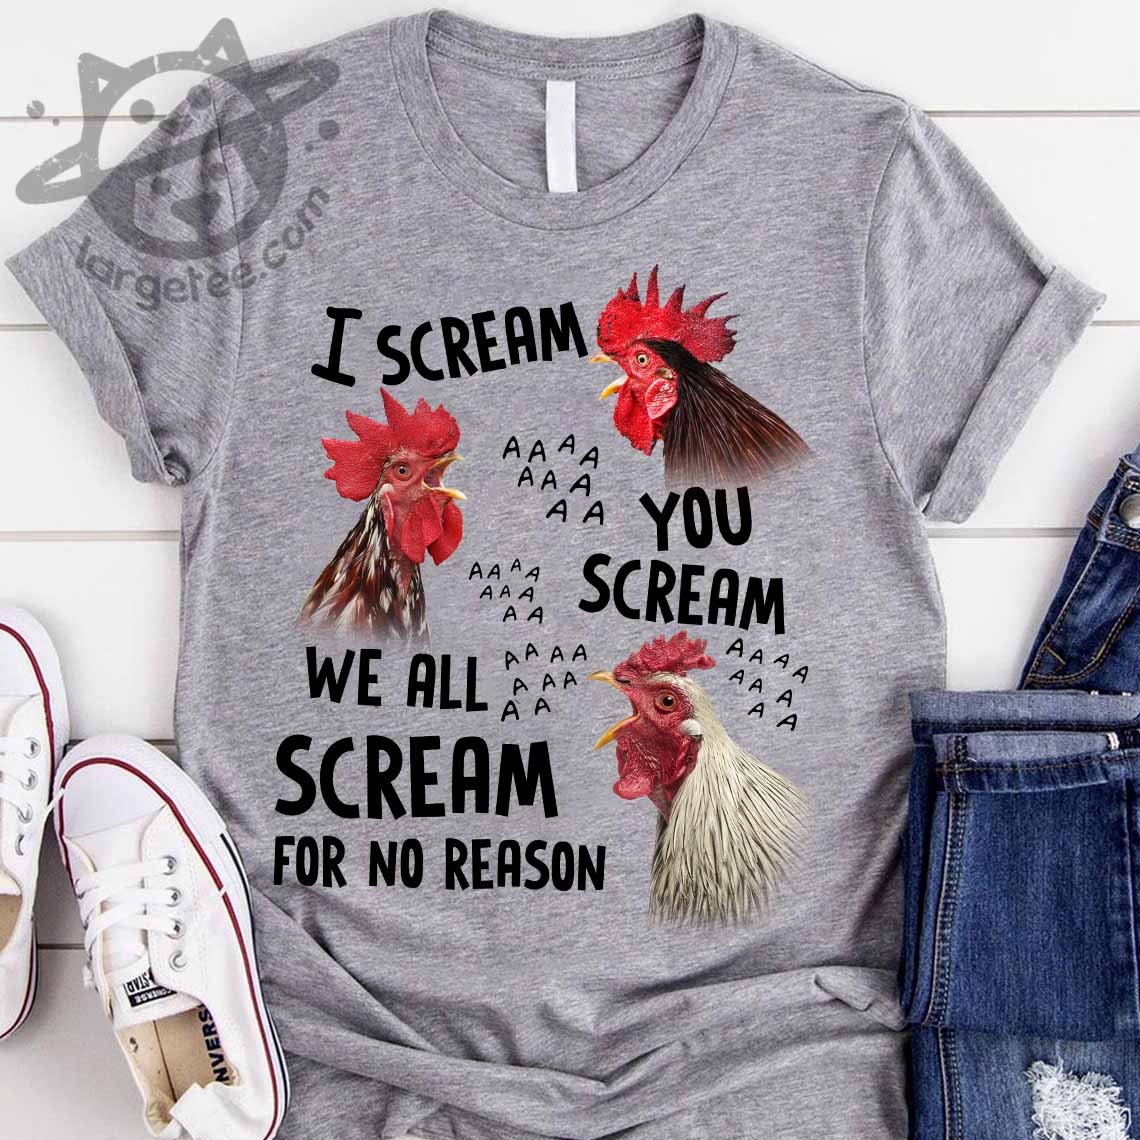 I scream you scream we all scream for no reason - Screaming chickens